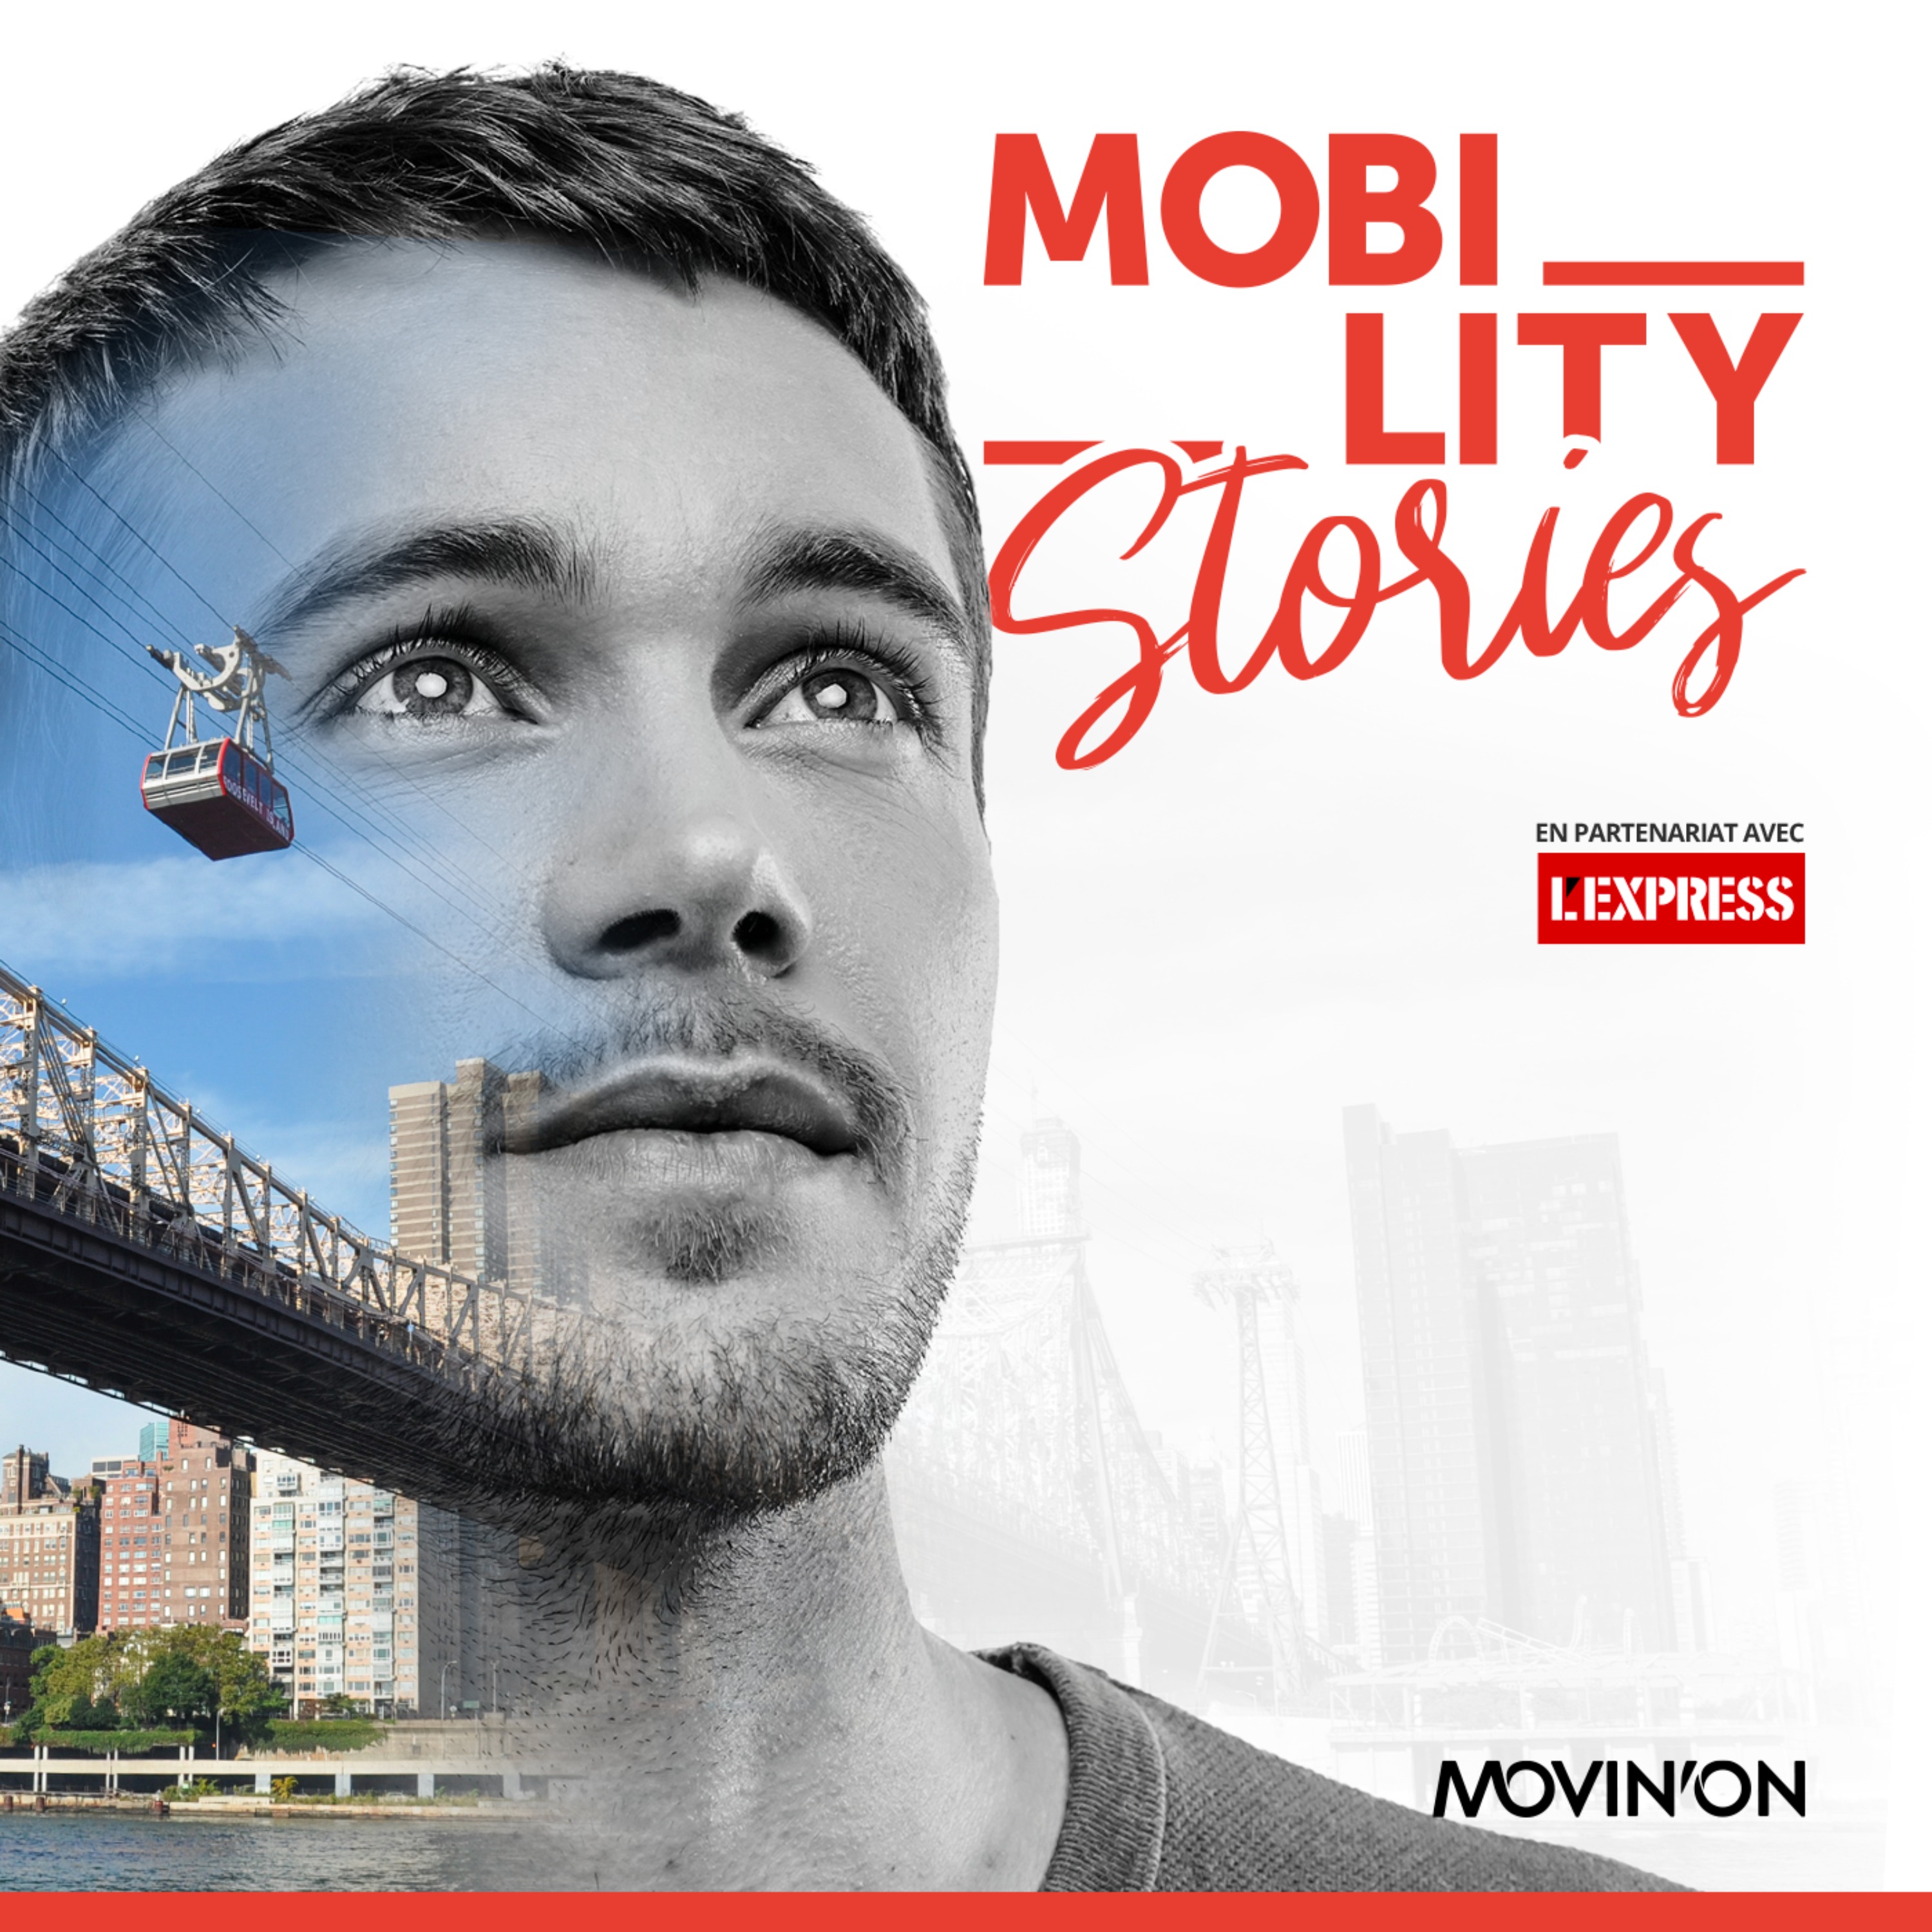 Mobility Stories : Téléphériques urbains, ces villes qui partent à la conquête du ciel (4/5)